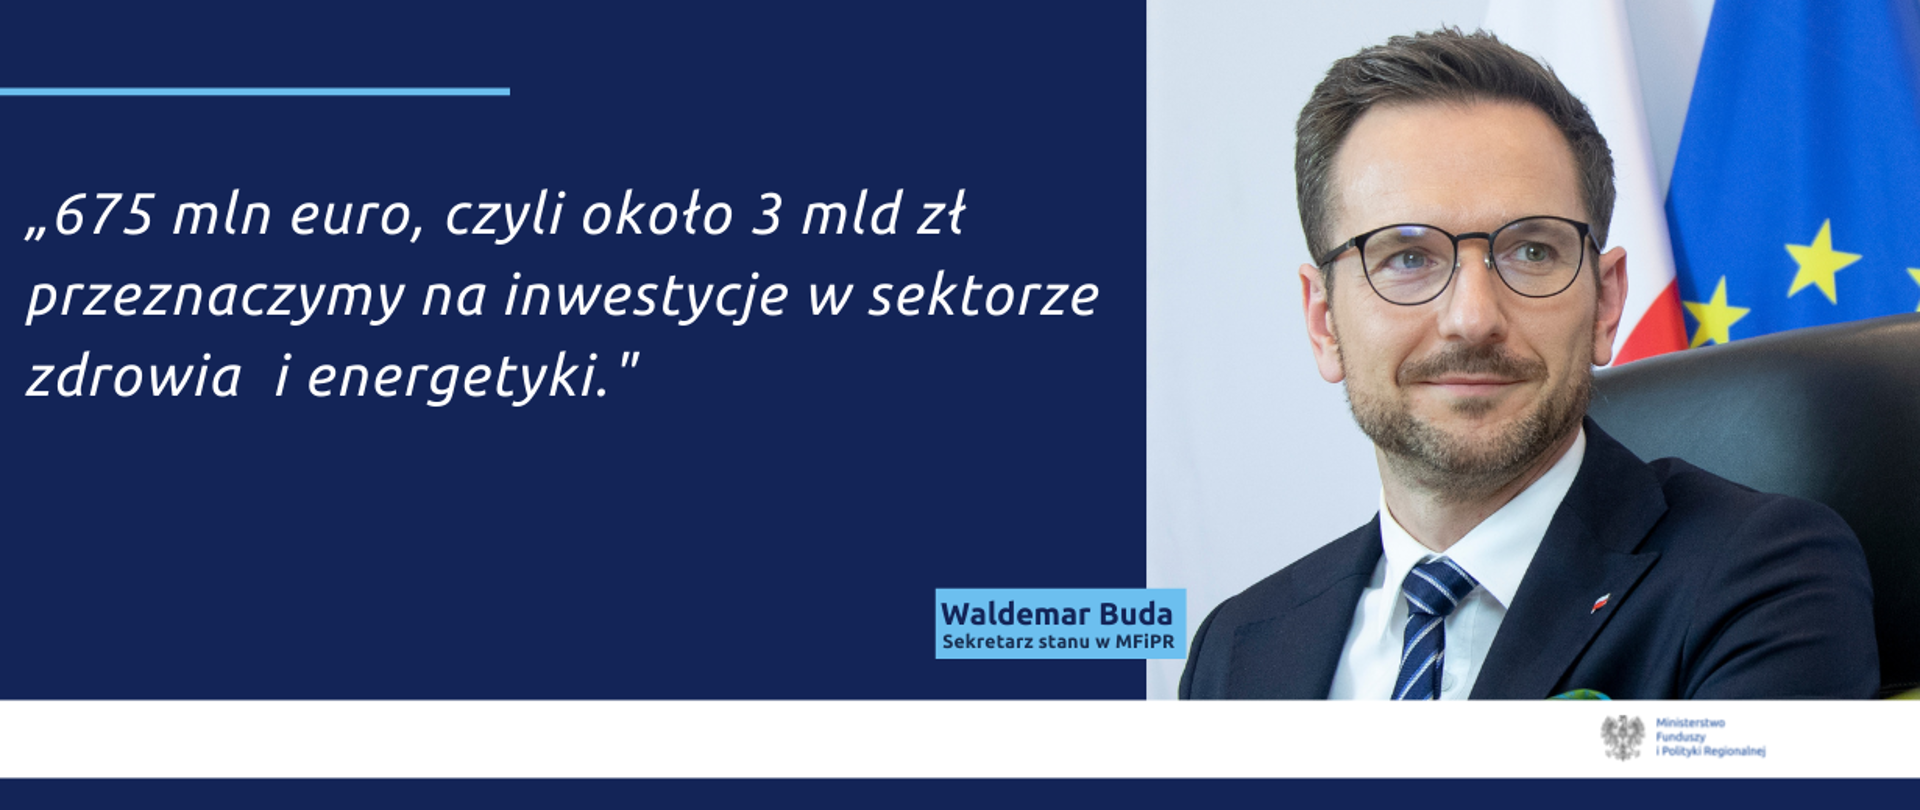 fotografia wiceministra Waldemara Budy i cytat: 675 mln euro, czyli około 3 mld zł przeznaczymy na inwestycje w sektorze zdrowia i energetyki